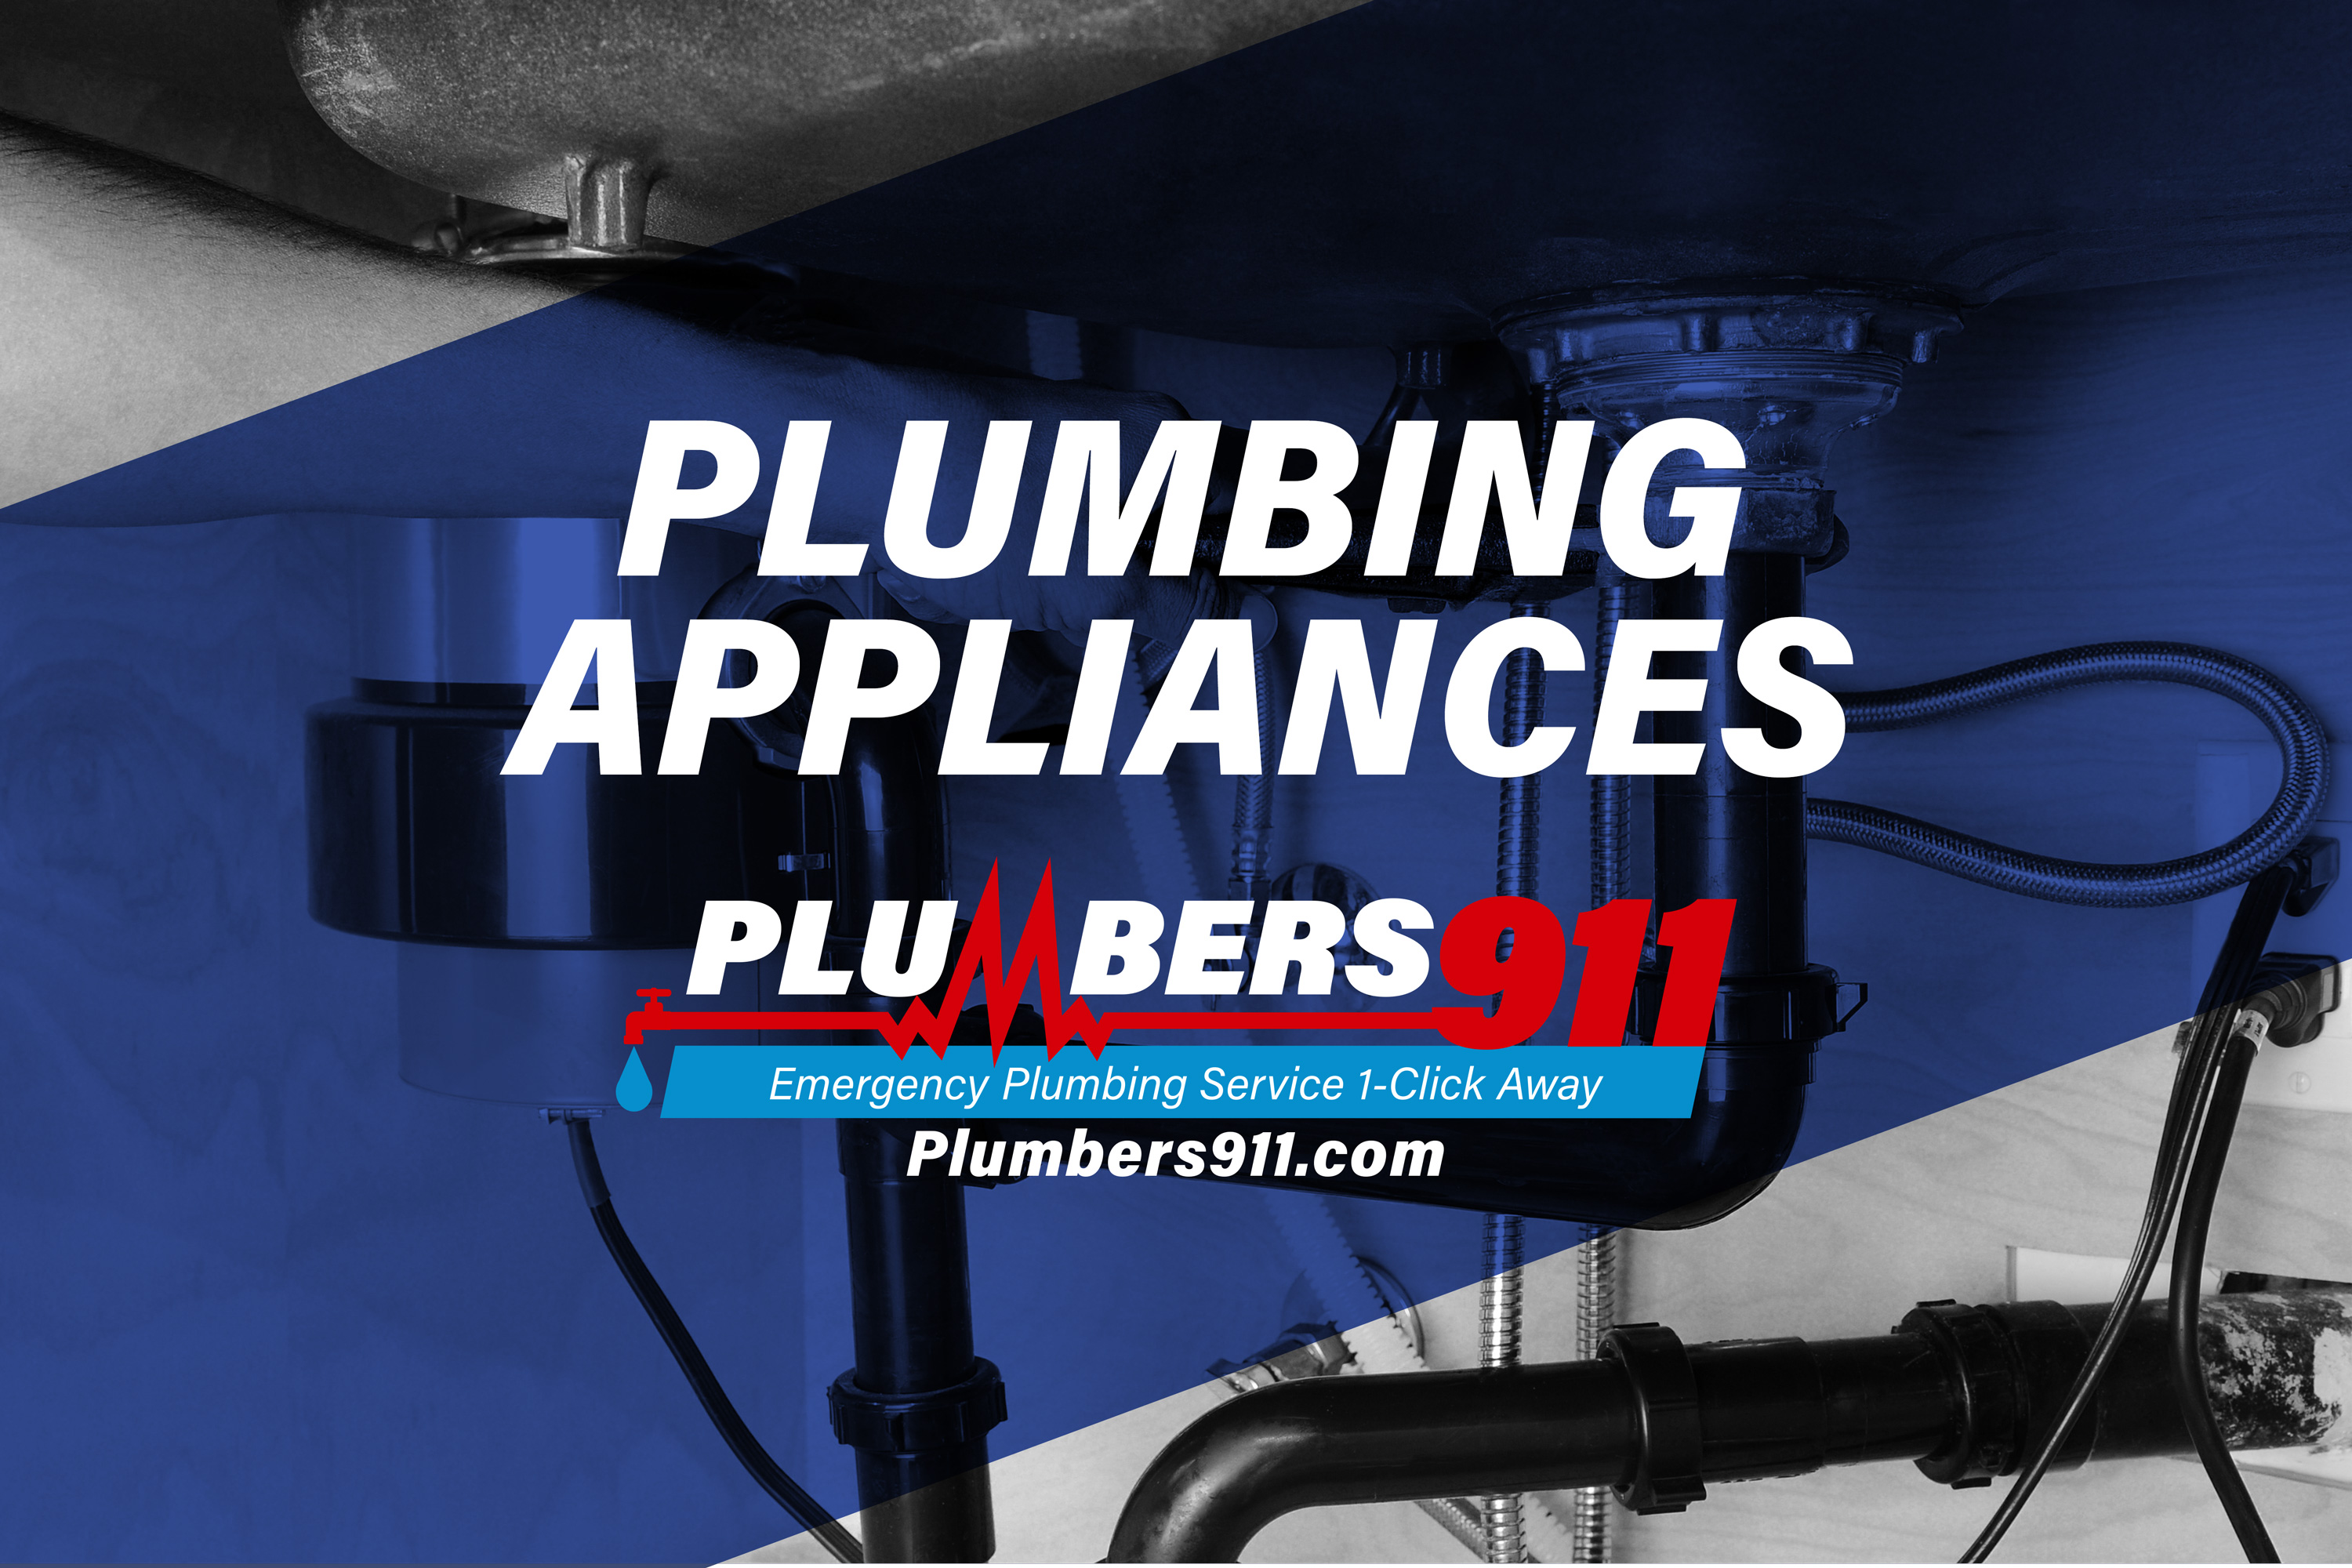 Plumbing Appliances Plumbers 911 